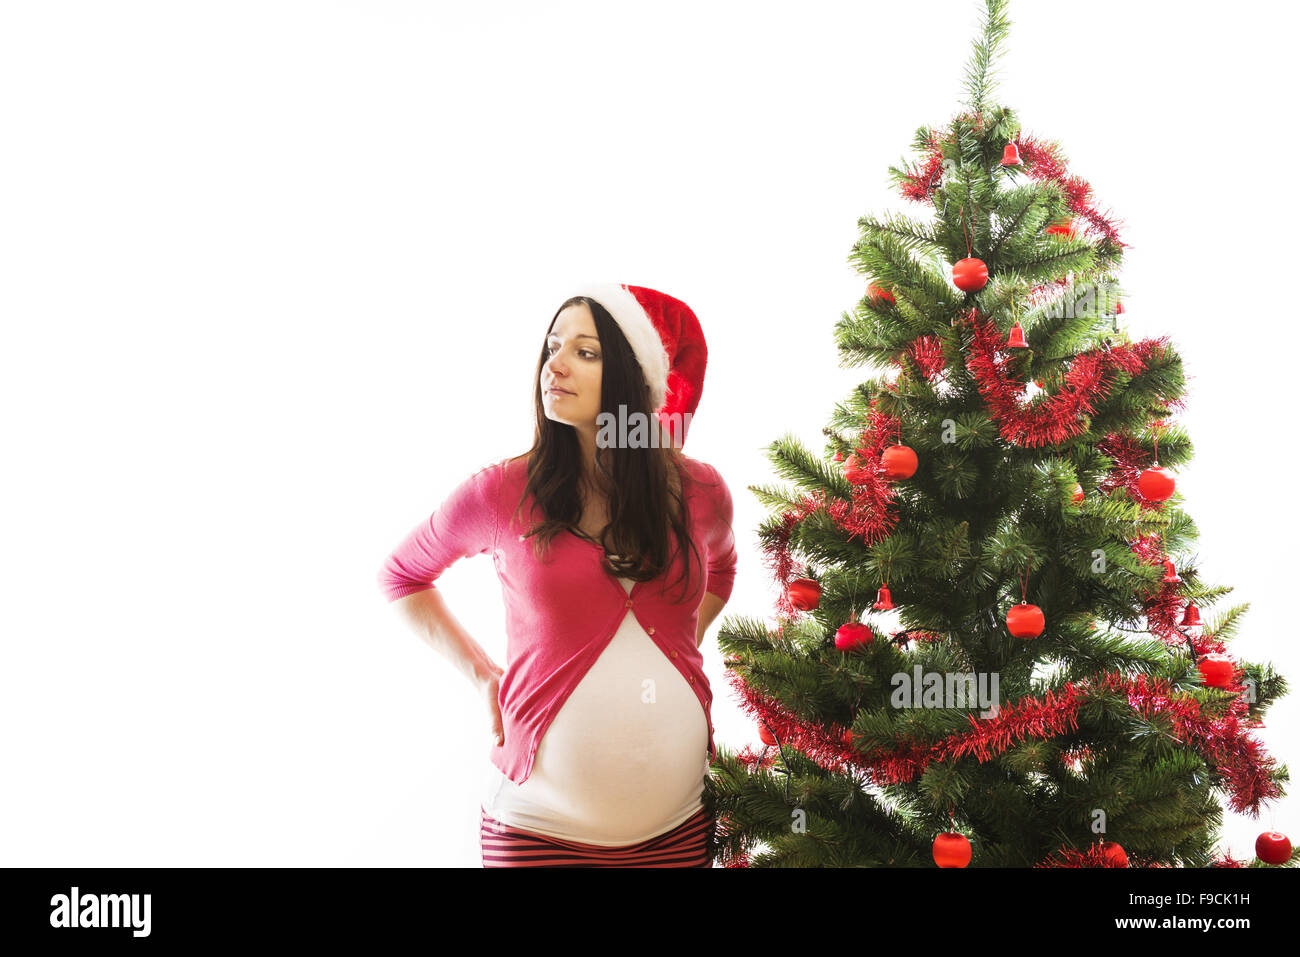 Schwangeren Frauen ist Weihnachtsbaum schmücken. Stockfoto